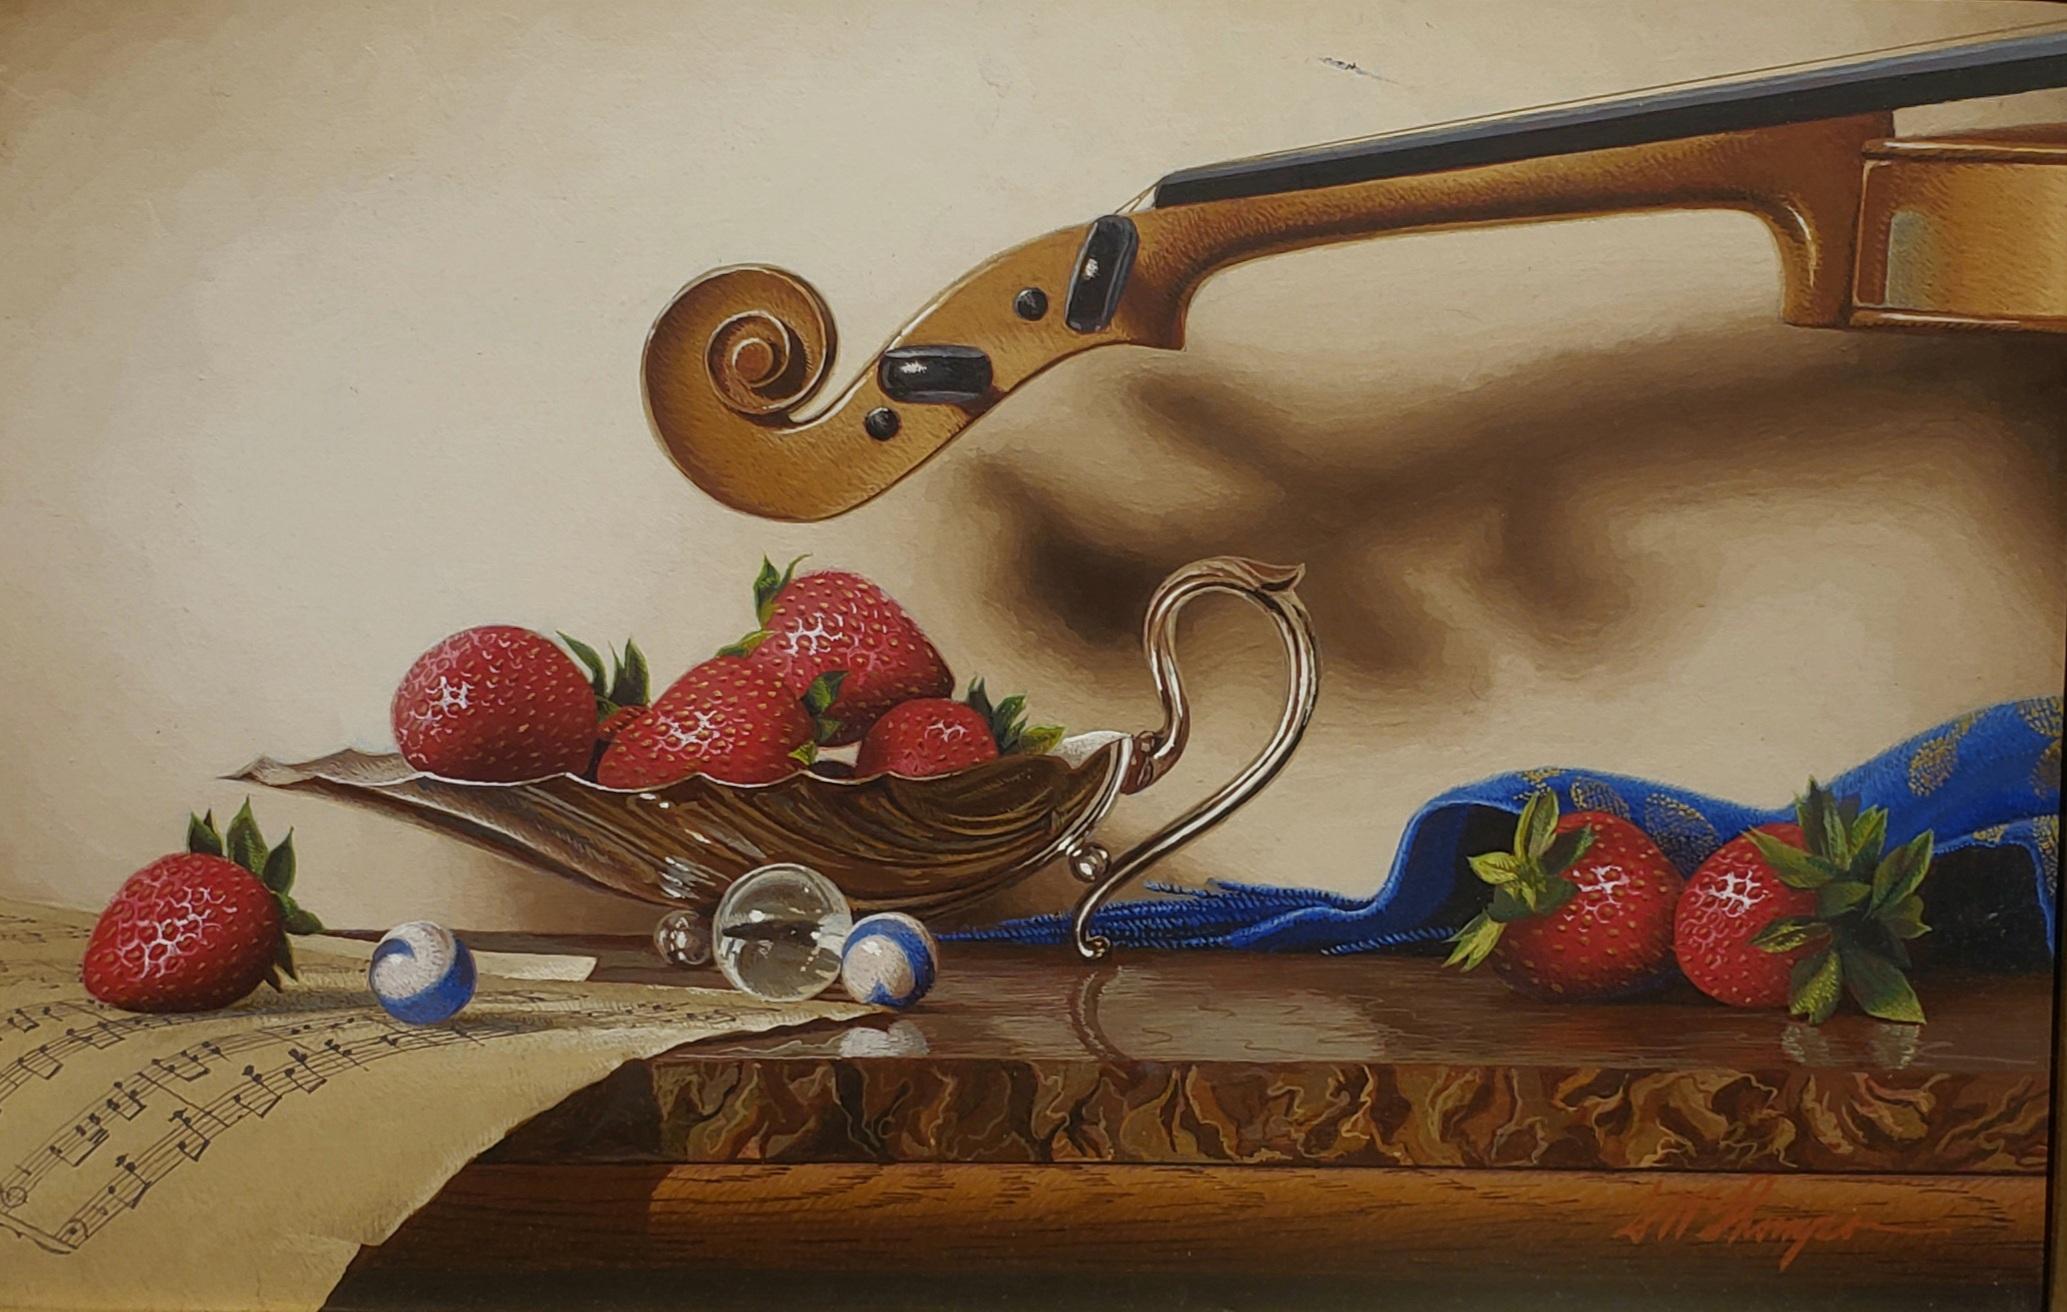  Silberne Kompottschale mit Violin, Egg Tempera,  Realistischer Realismus  3D-Erscheinung, amerikanischer Künstler (Braun), Still-Life Painting, von Mark Thompson